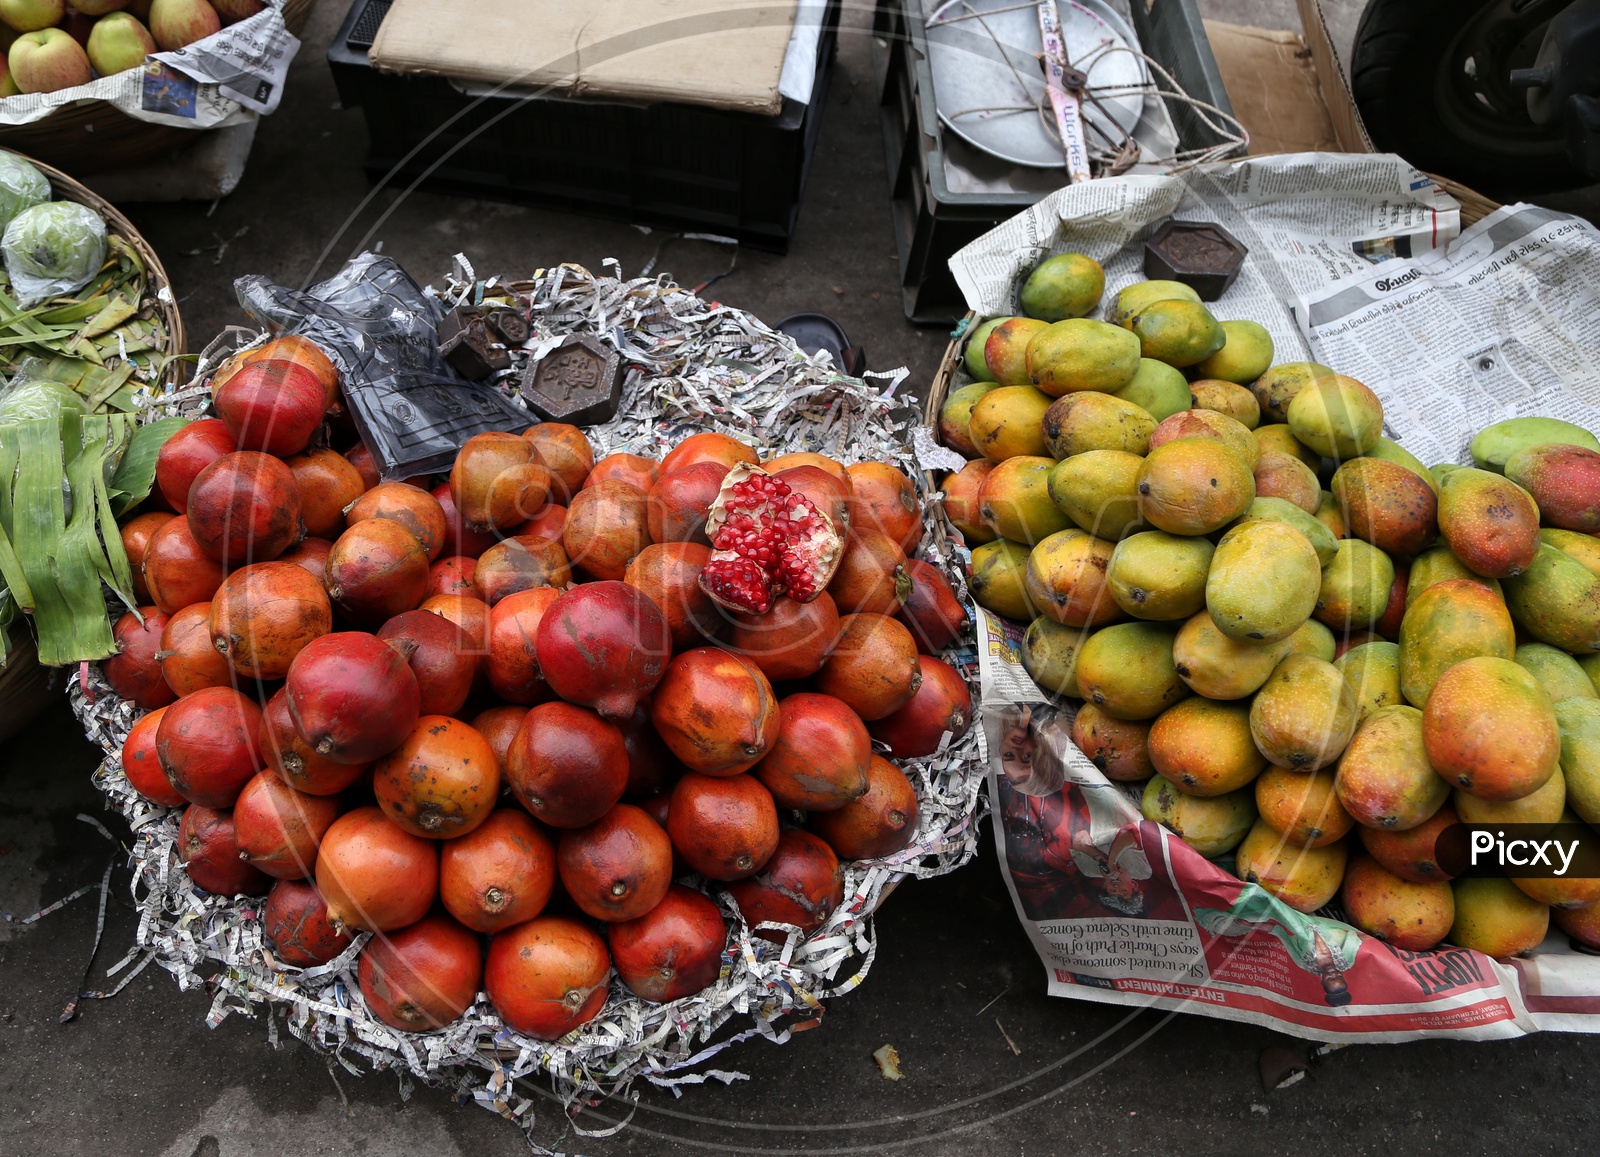 Fruit Baskets  At  a  Road Side Fruit Vendor Stall